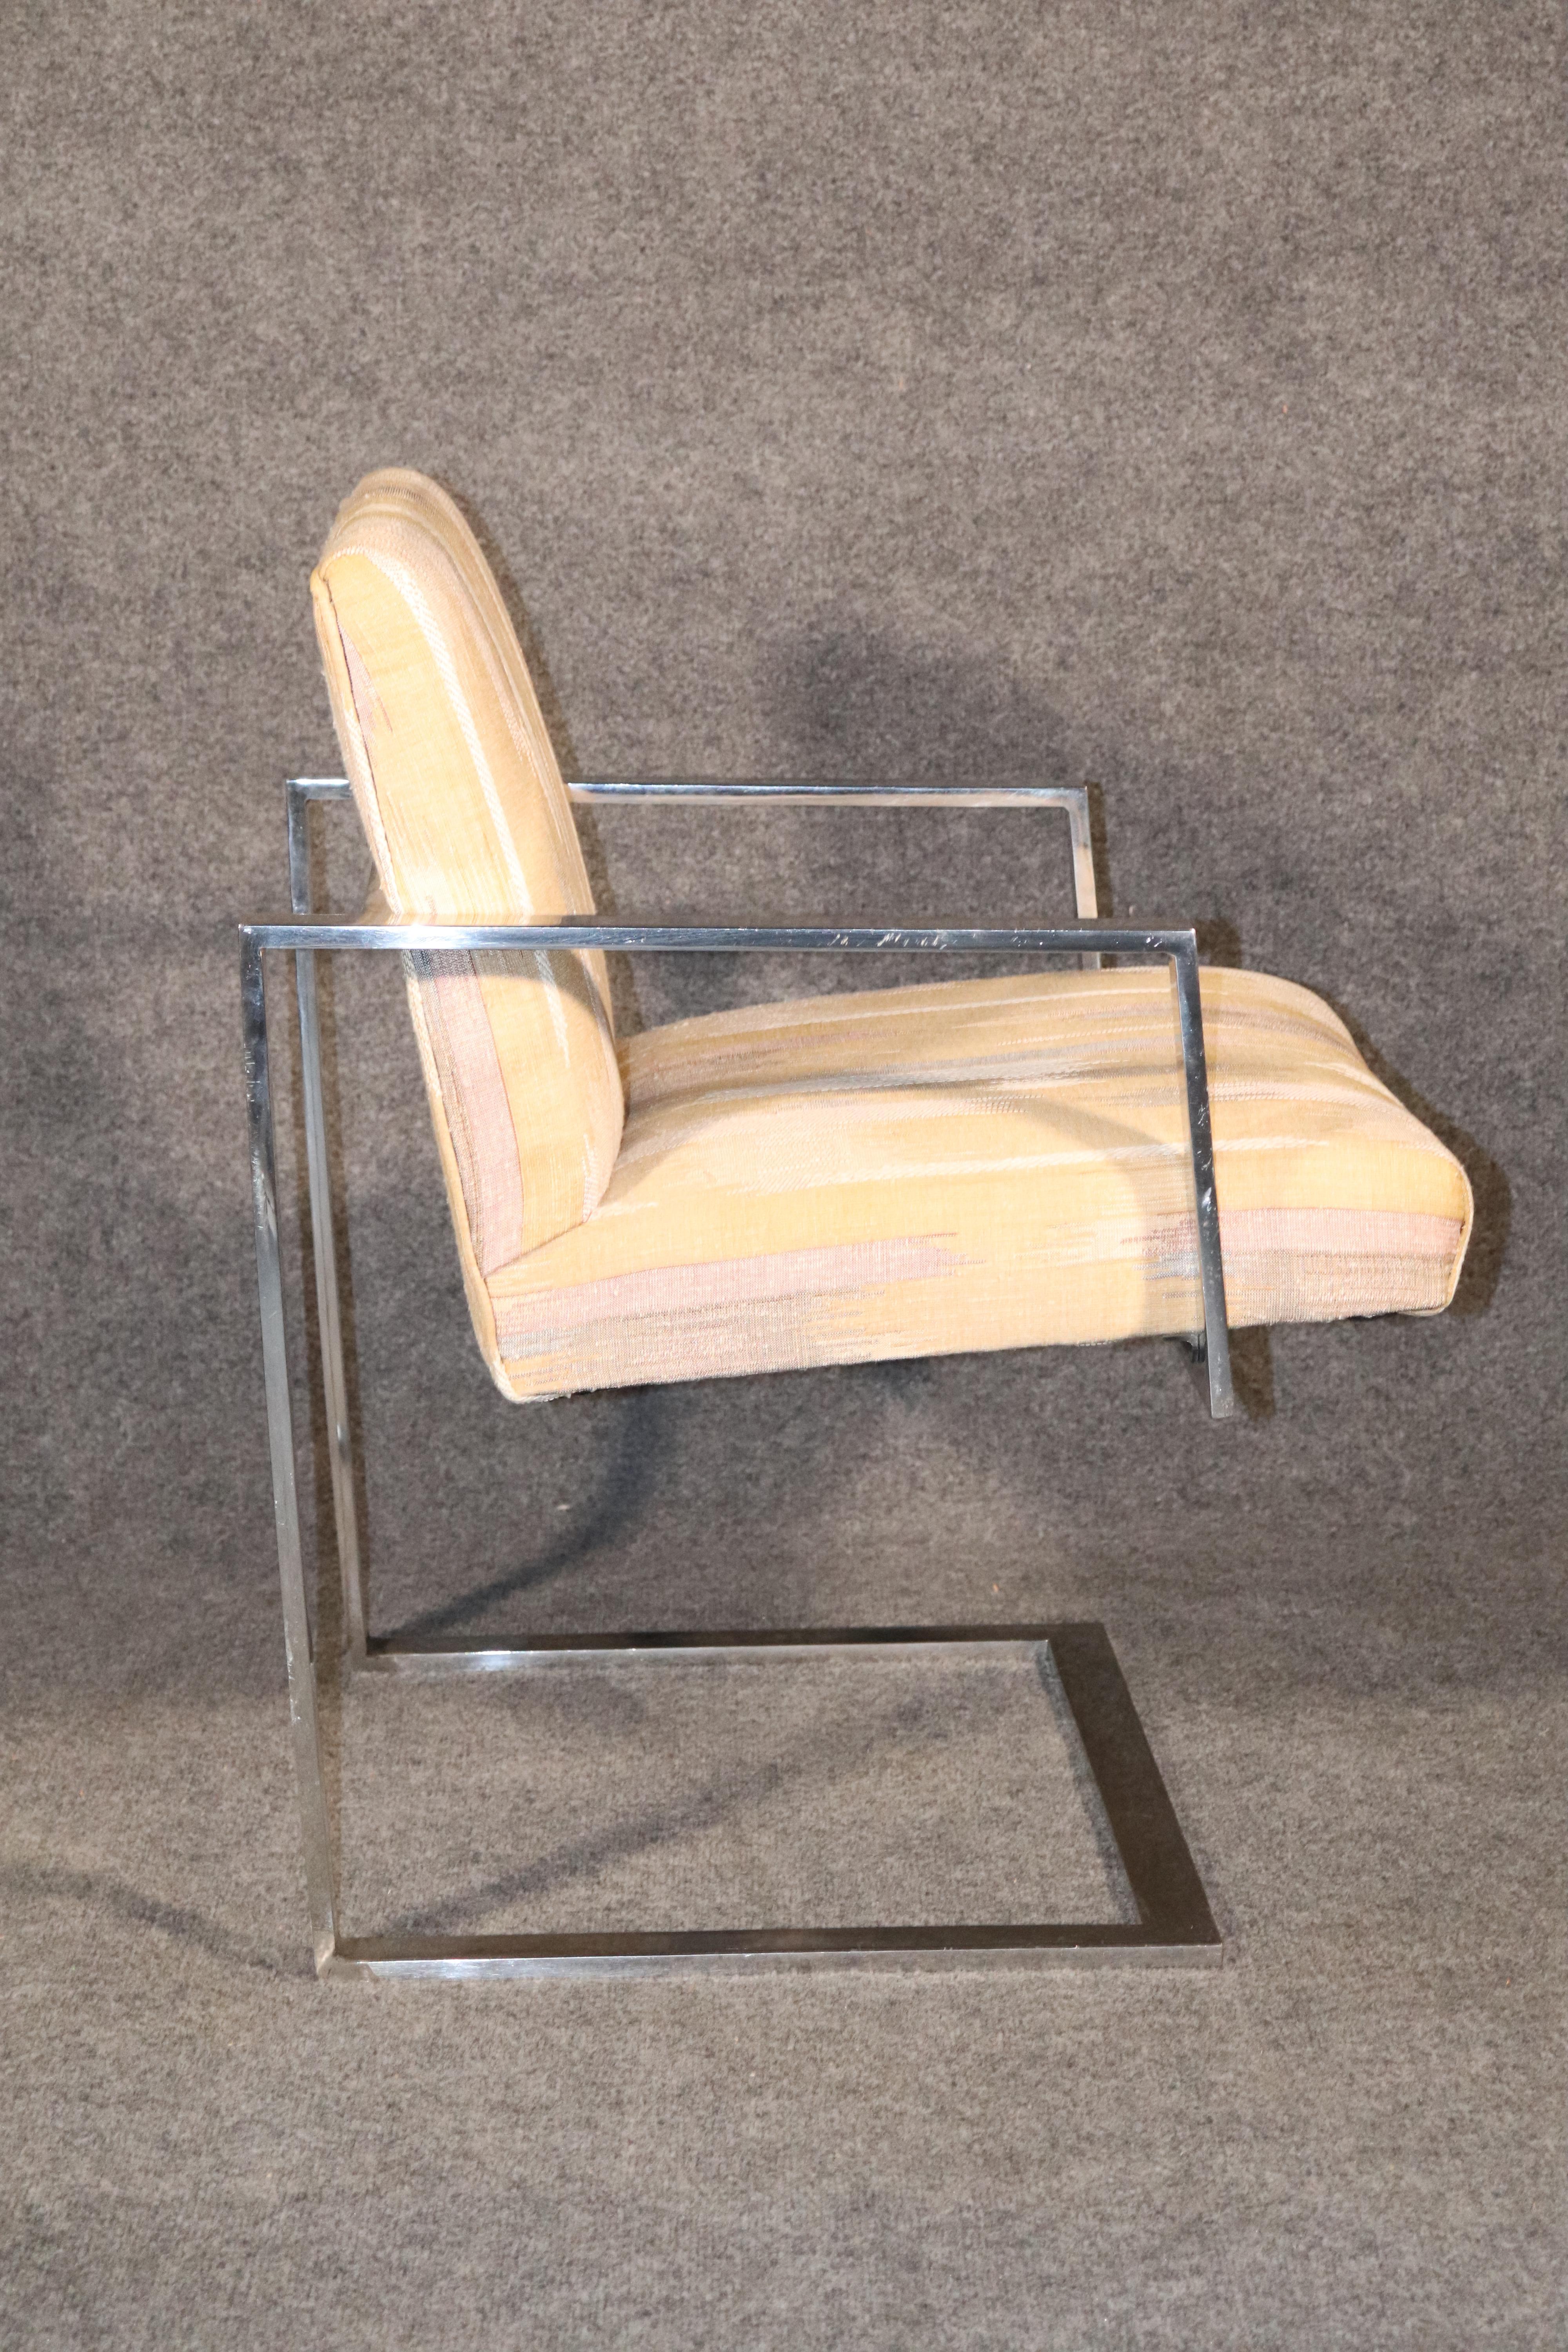 Moderner Sessel im Stil von Milo Baughman aus der Mitte des Jahrhunderts, hergestellt aus einem schweren Flachstangengestell in poliertem Chrom. Der einzigartige Freischwingerrahmen verleiht dem Sitz ein schwebendes Design.
Bitte bestätigen Sie den